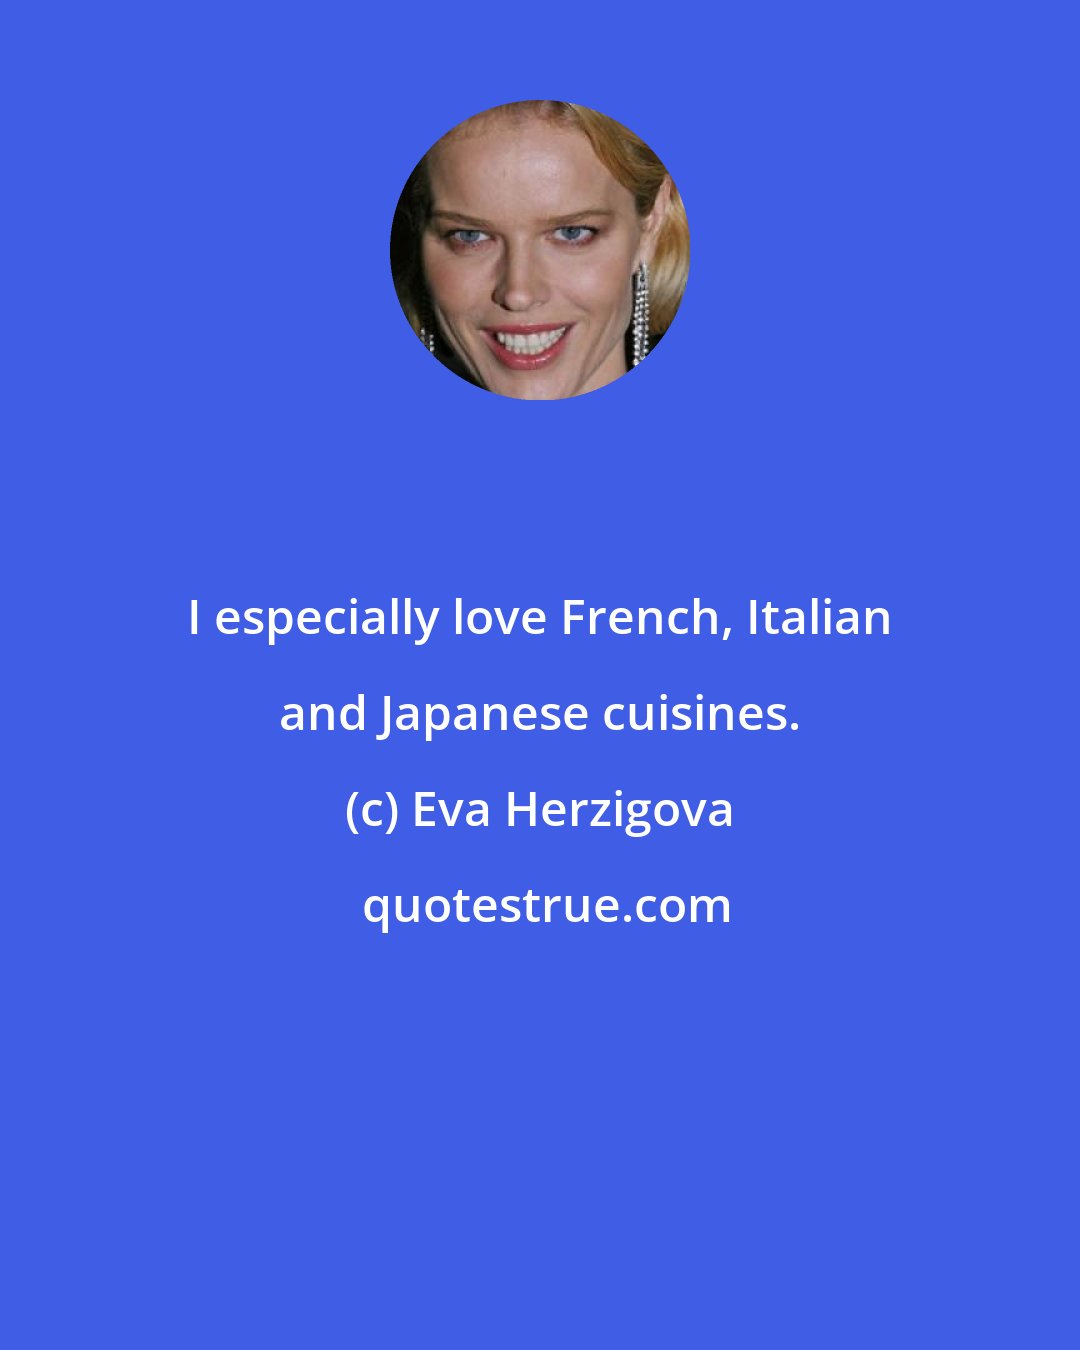 Eva Herzigova: I especially love French, Italian and Japanese cuisines.